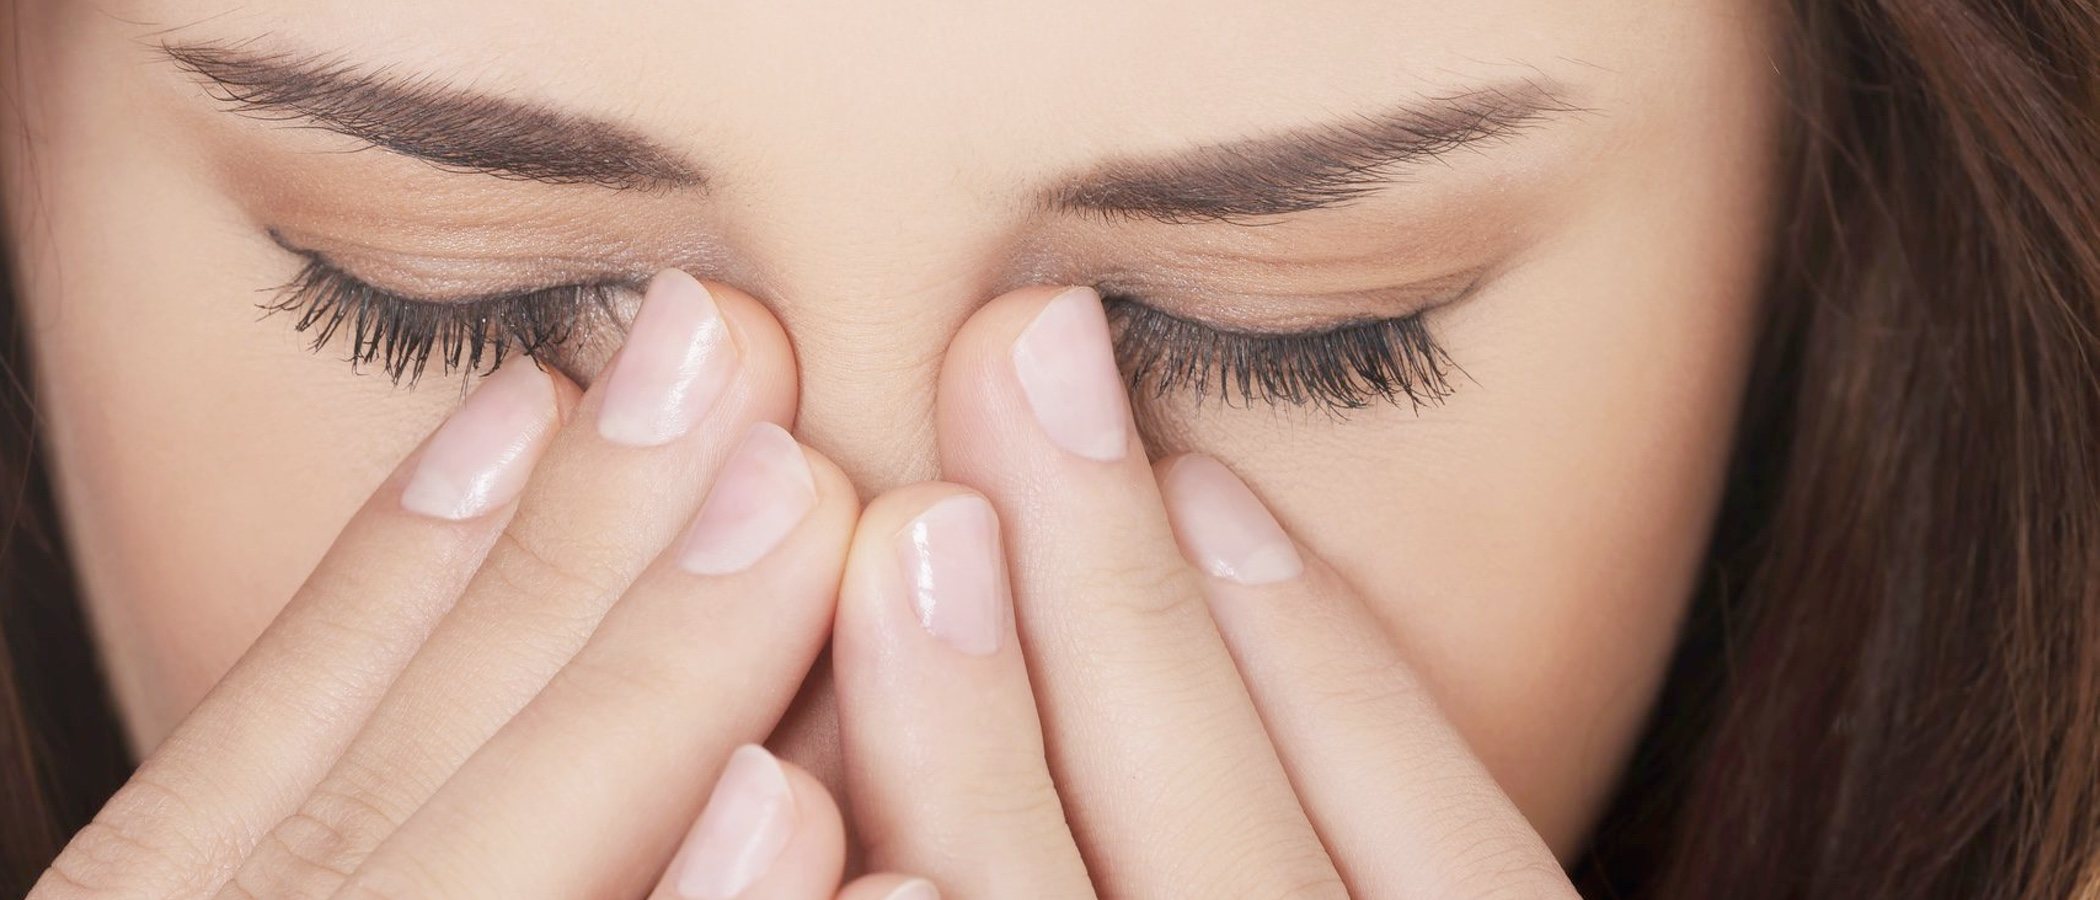 Cómo maquillarse para disimular los ojos hinchados